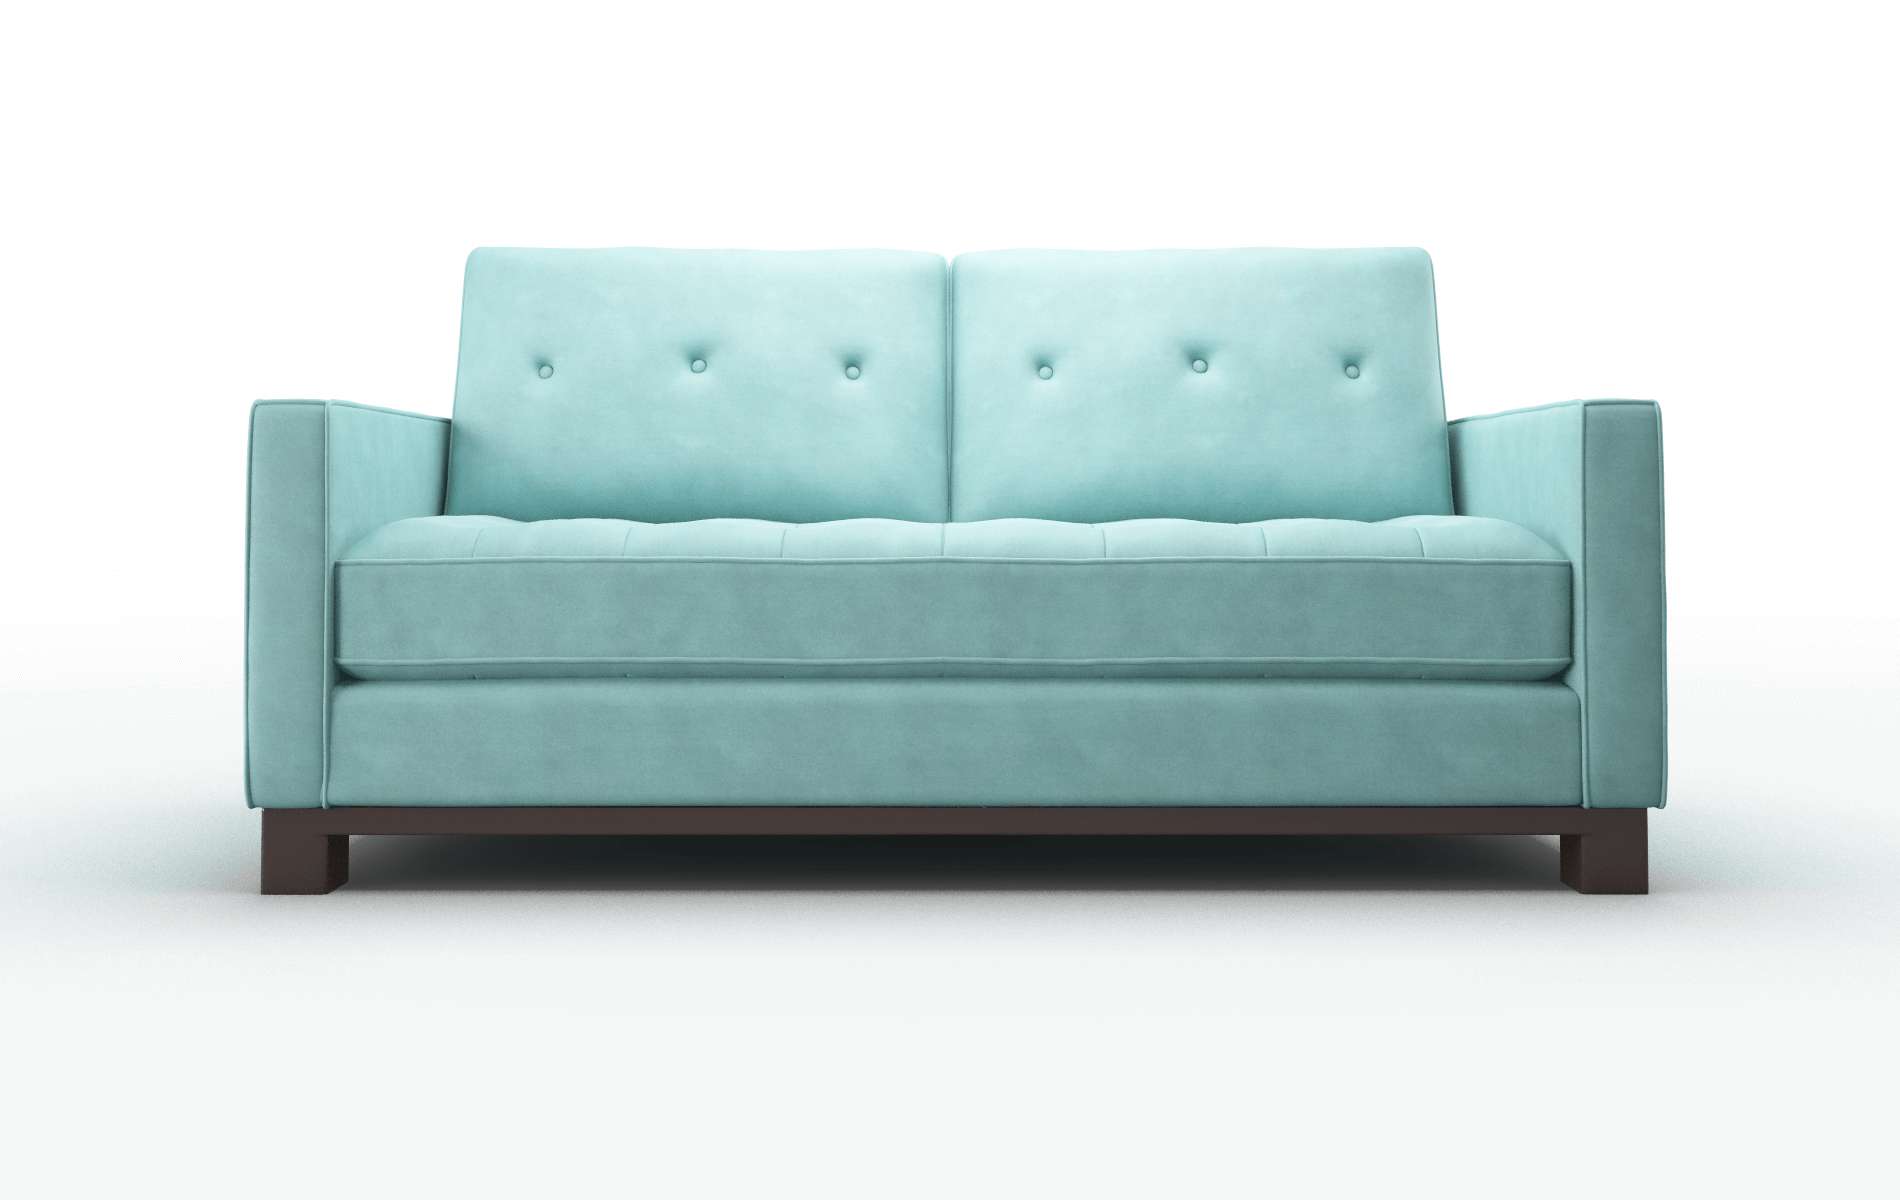 Syros Curious Turquoise Sofa espresso legs